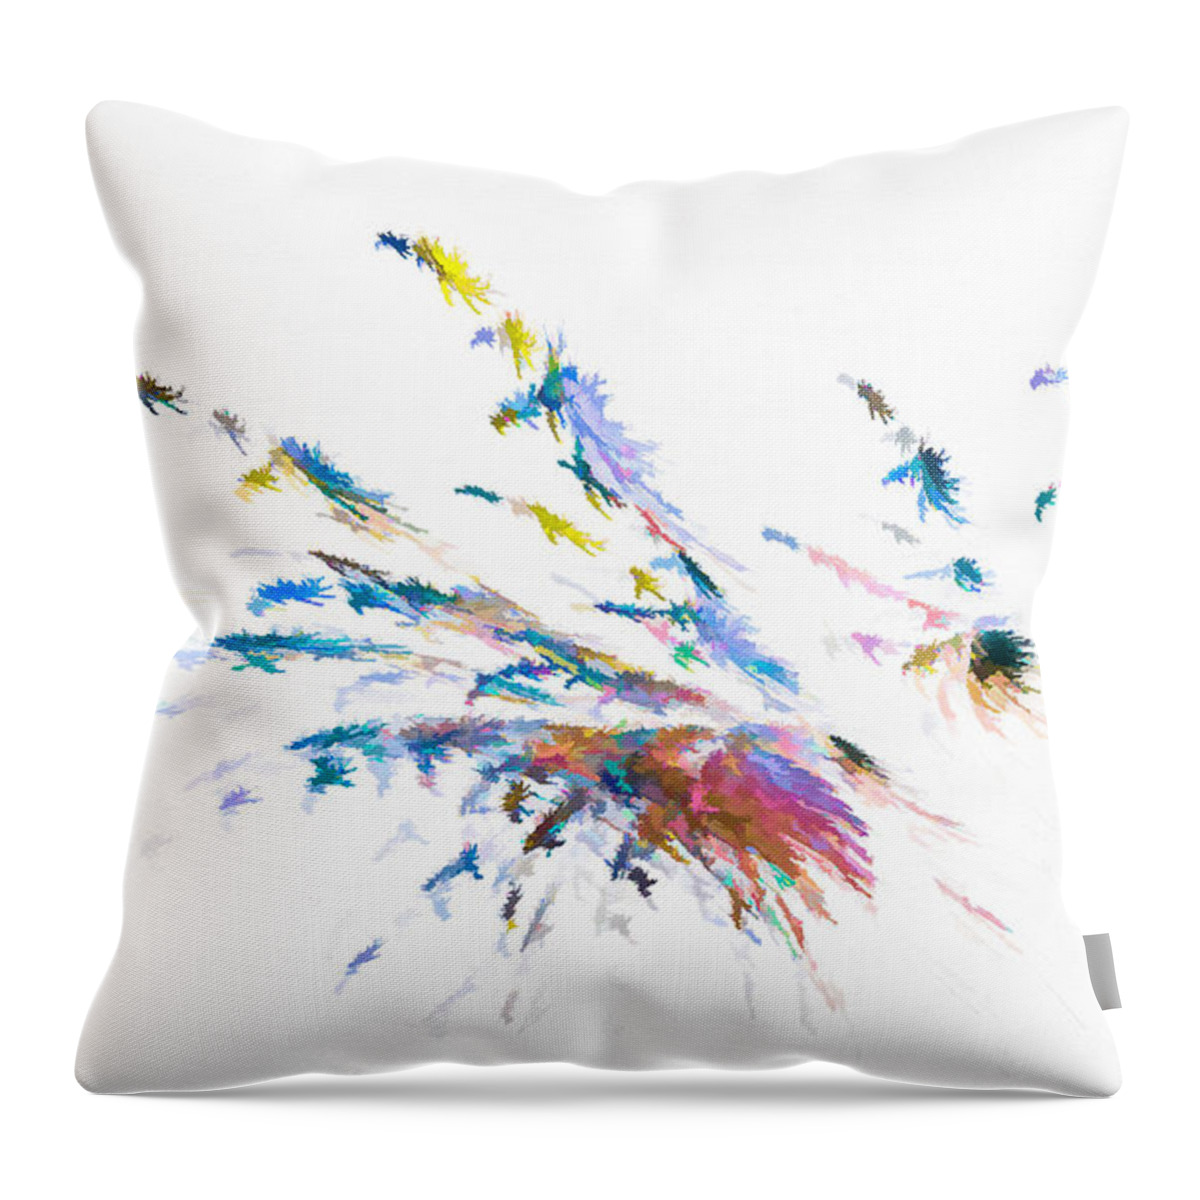 Splatter Throw Pillow featuring the digital art Splatter Fan Blue by Don Northup